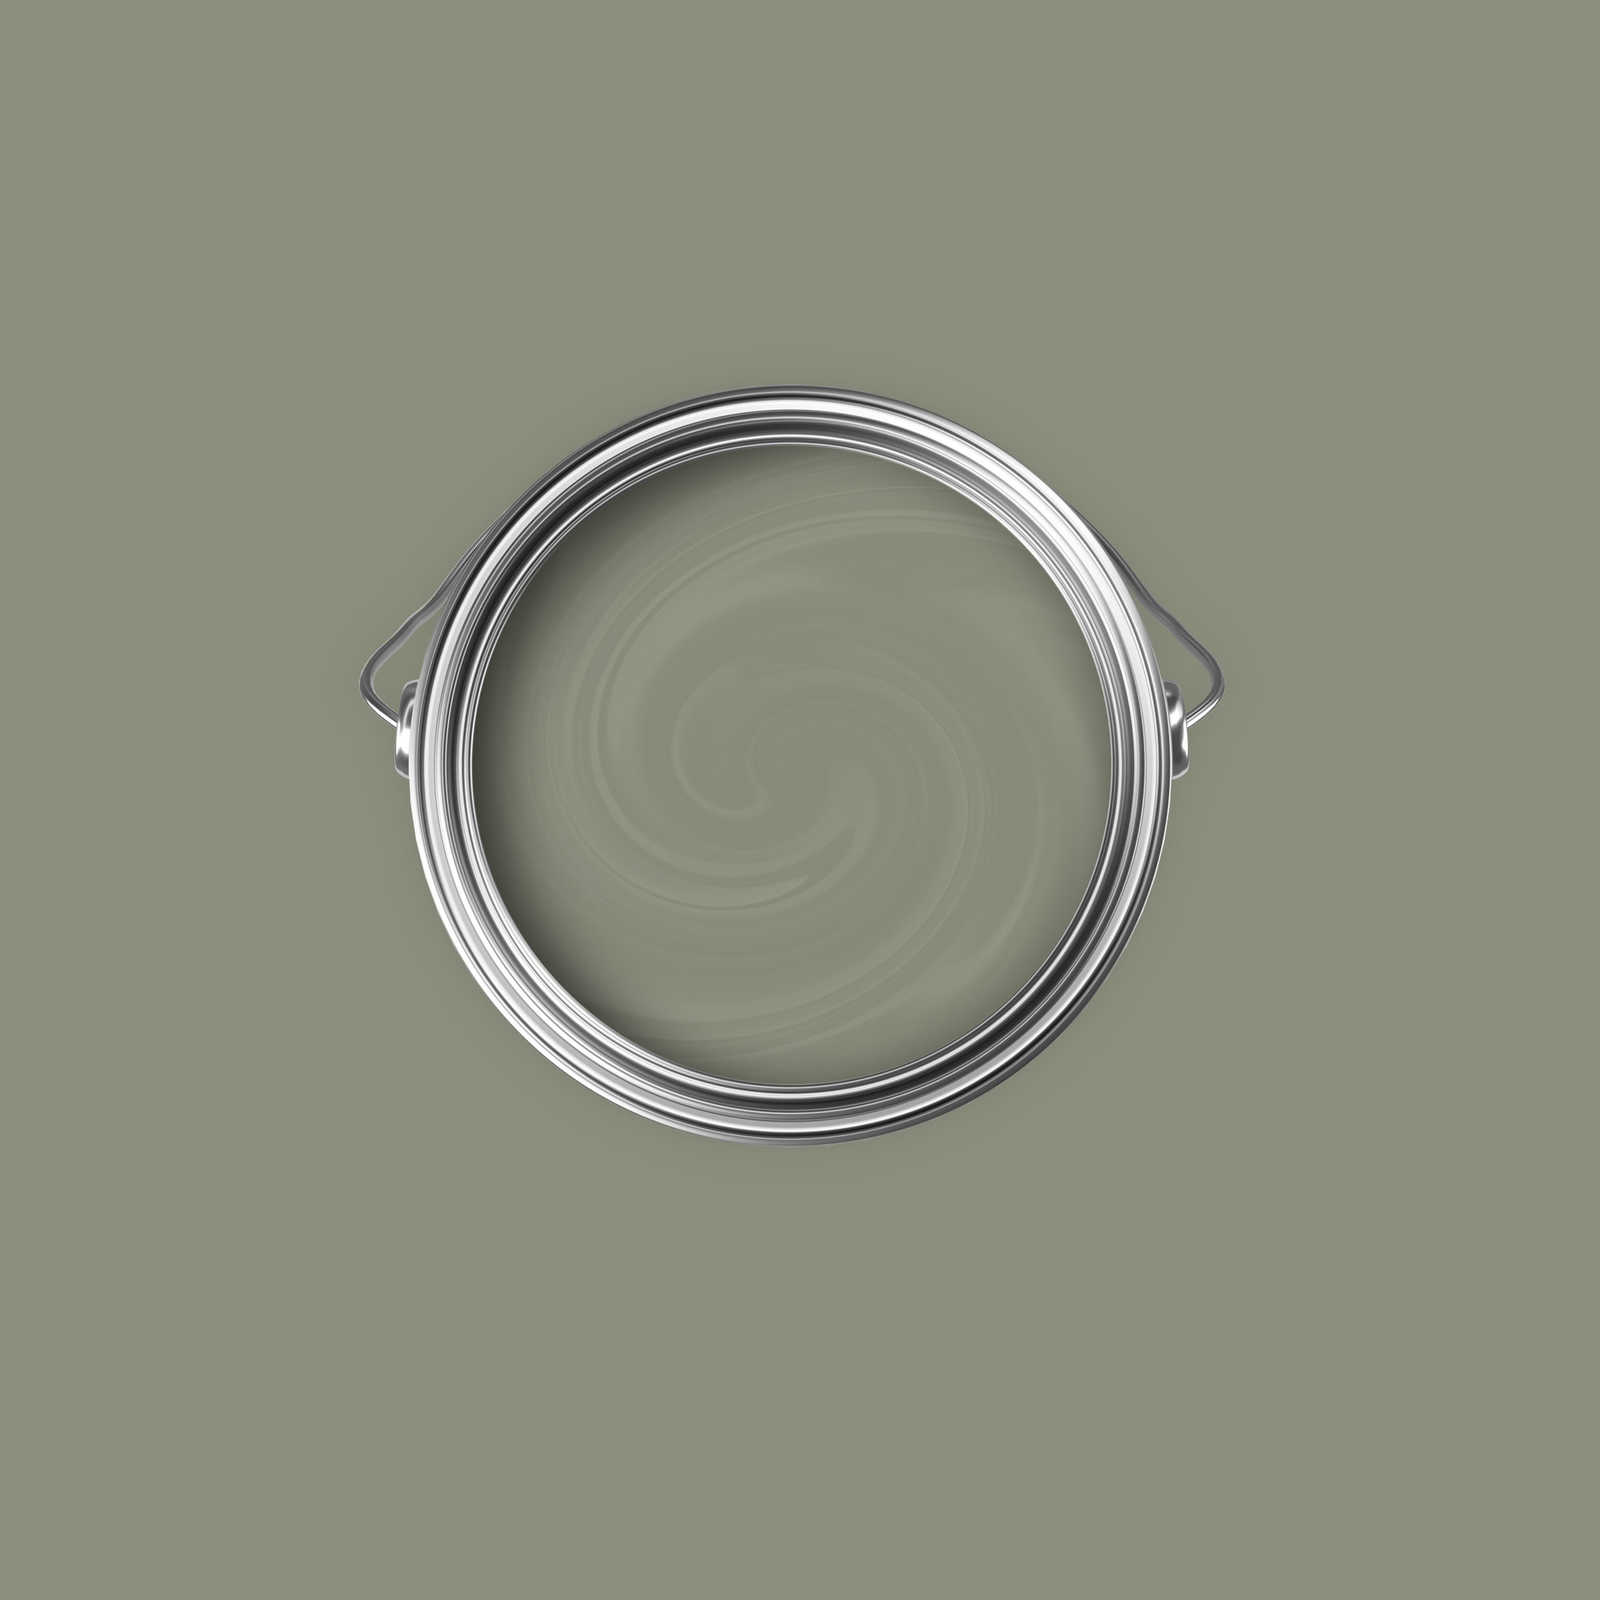             Peinture murale Premium vert olive convaincant »Talented calm taupe« NW706 – 2,5 litres
        